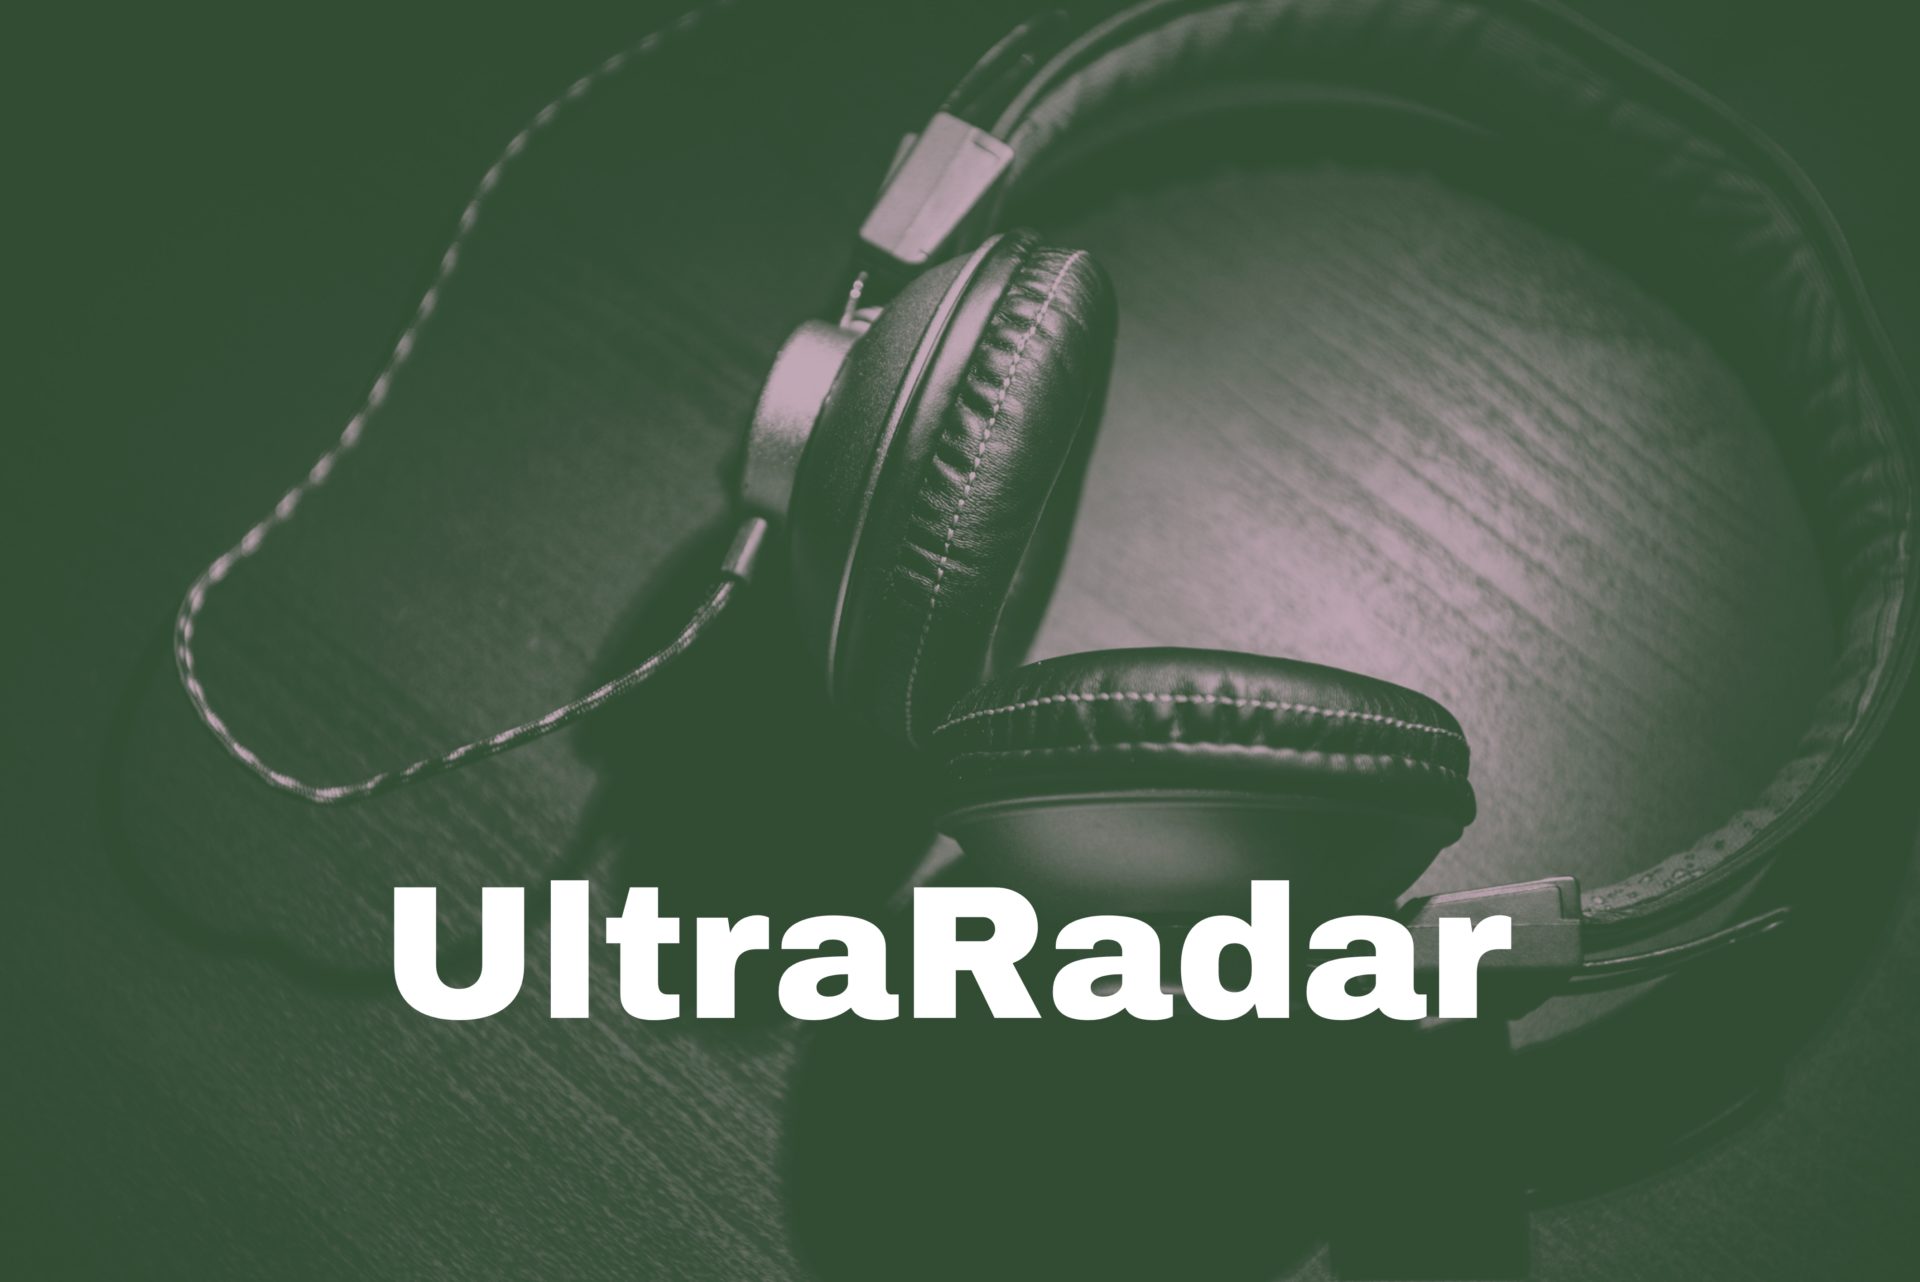 UltraRadar. Lanzamientos recomendados de la música alternativa mundial – Noviembre 2021